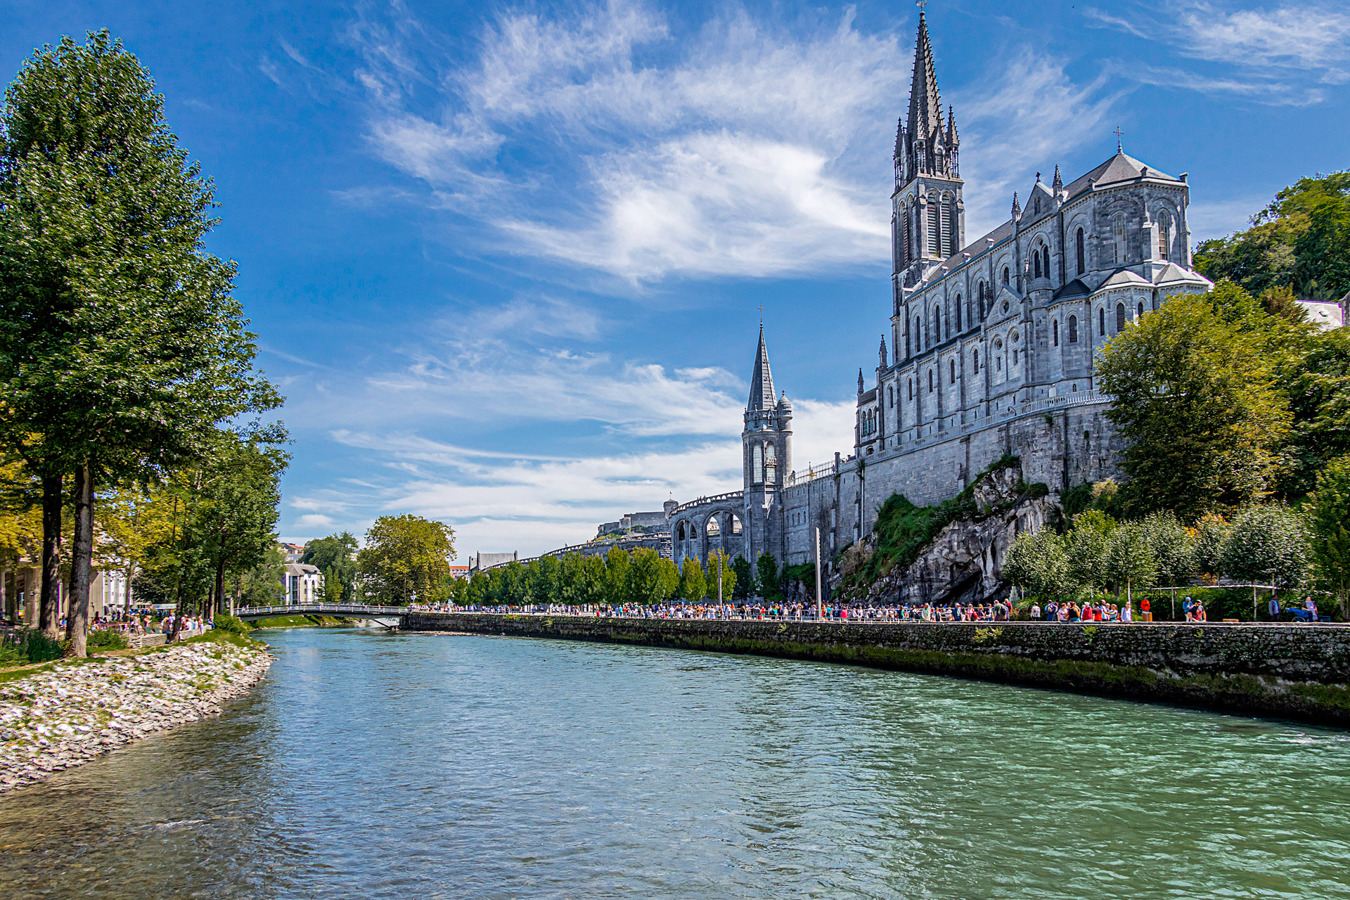 Lourdes, places to visit?